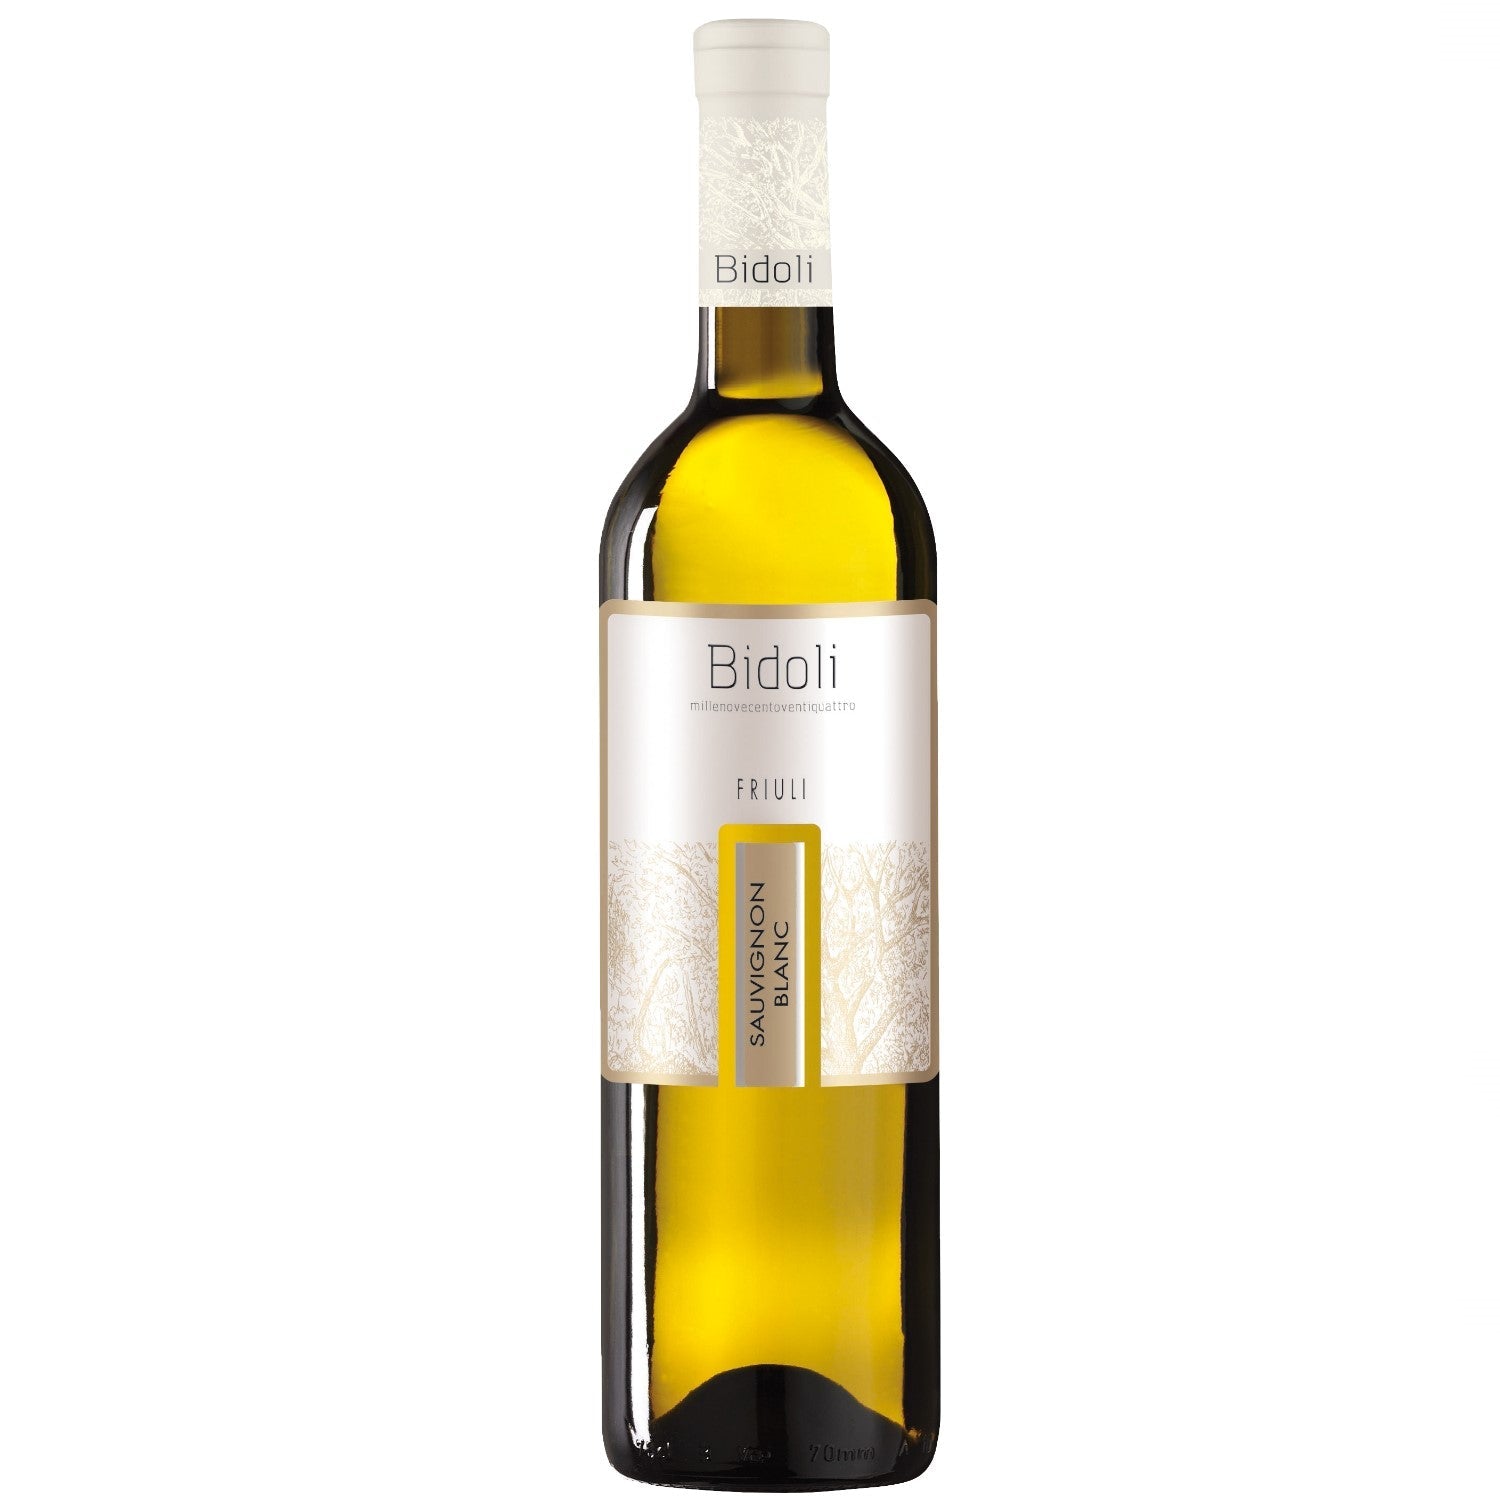 Bidoli Vini Sauvignon Blanc DOC Friuli Grave Weißwein Wein trocken Italien (3 x 0.75l) - Versanel -